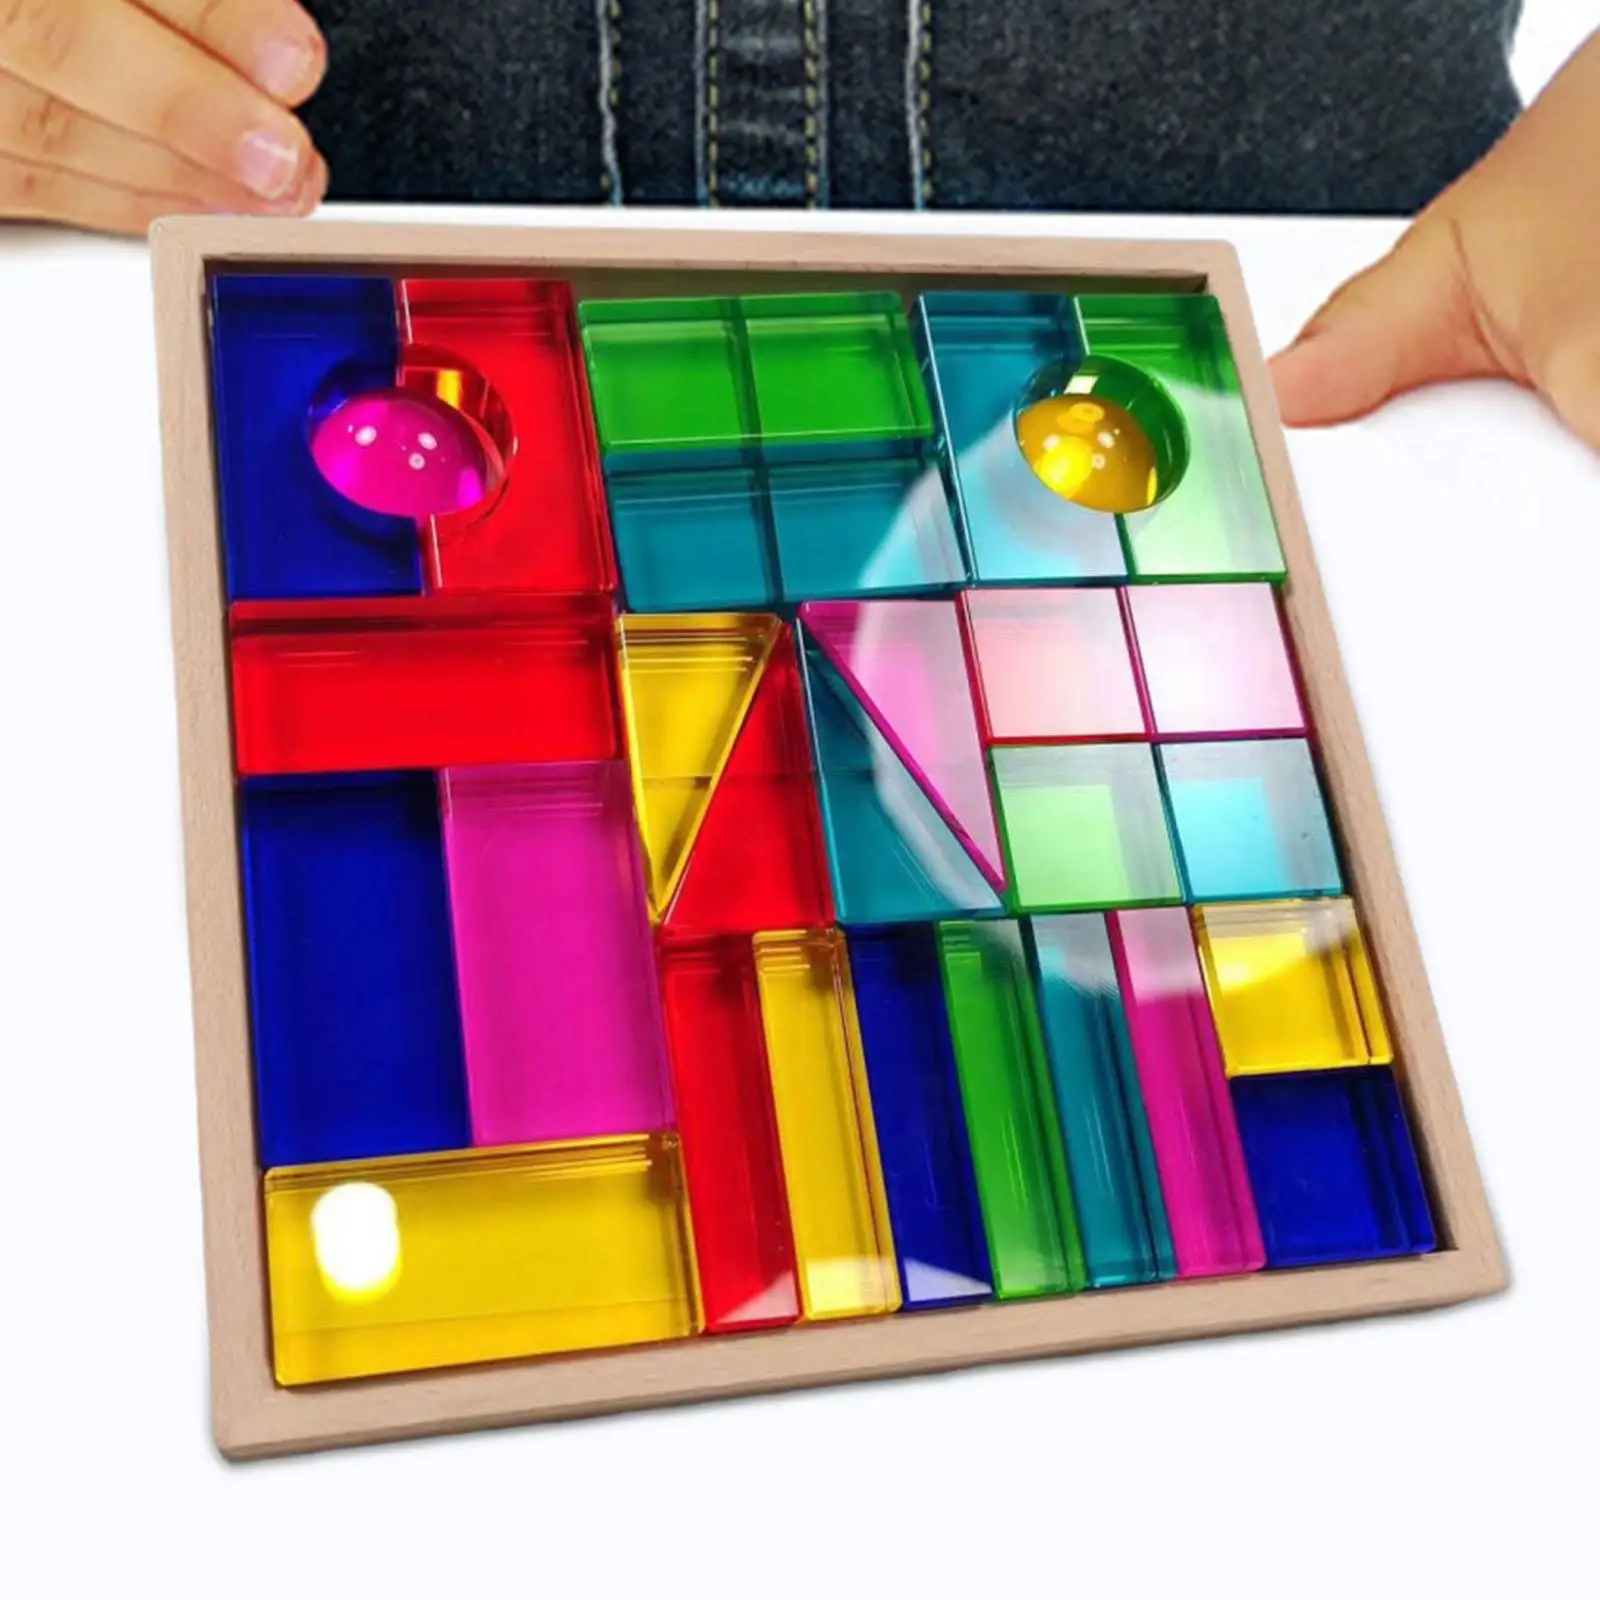 

Набор кубиков Монтессори игрушки сенсорные тренировочные гладкие Обучающие цветные подарки на день рождения строительные блоки для мальчиков девочек детей